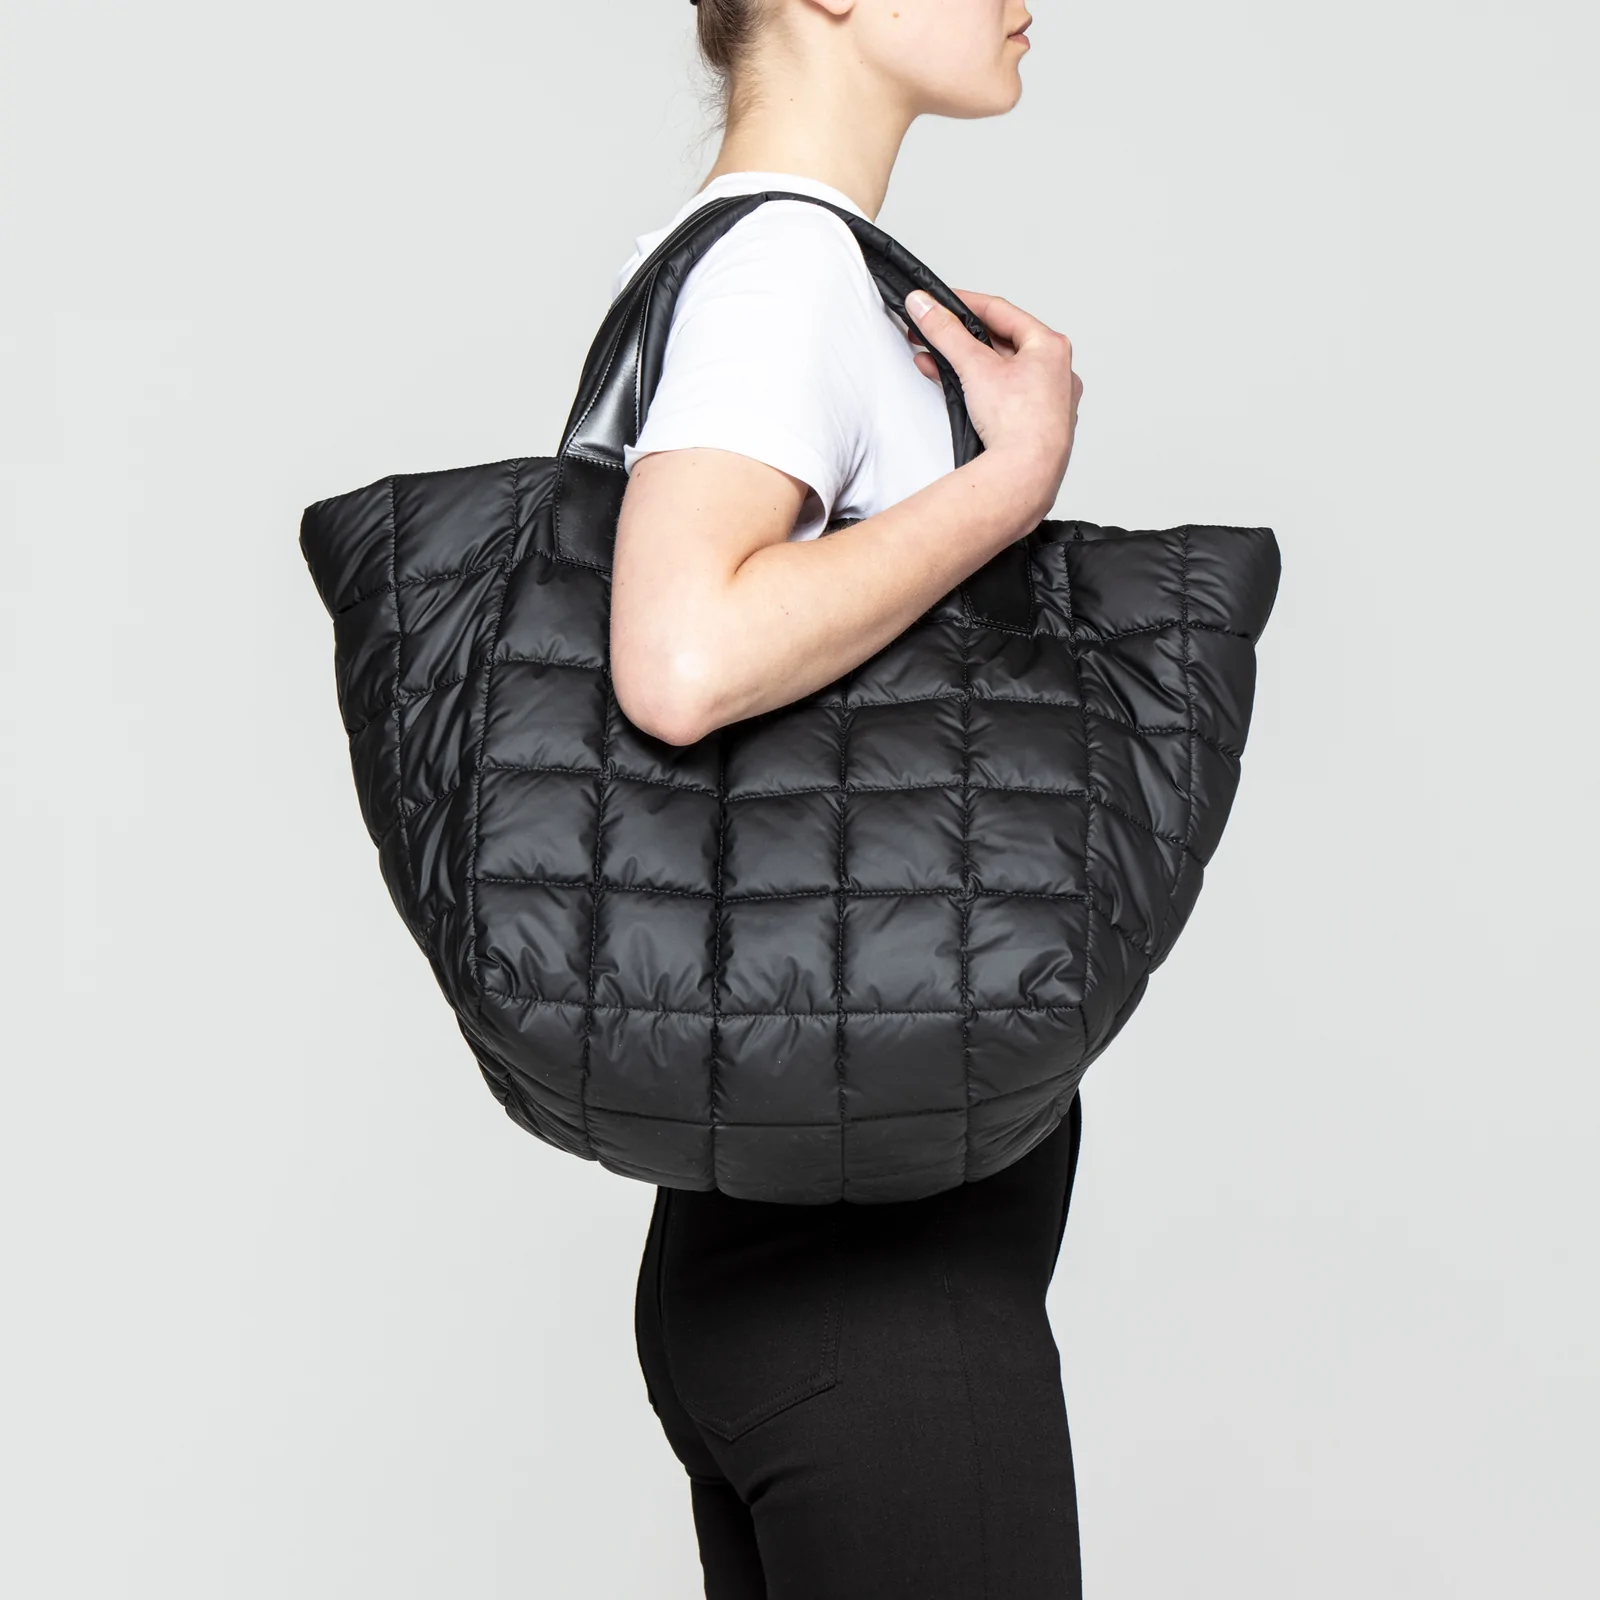 VeeCollective Taschen für Frauen: Minimalistisches Design und hohe Funktionalität im Online-Shop von Klaas.